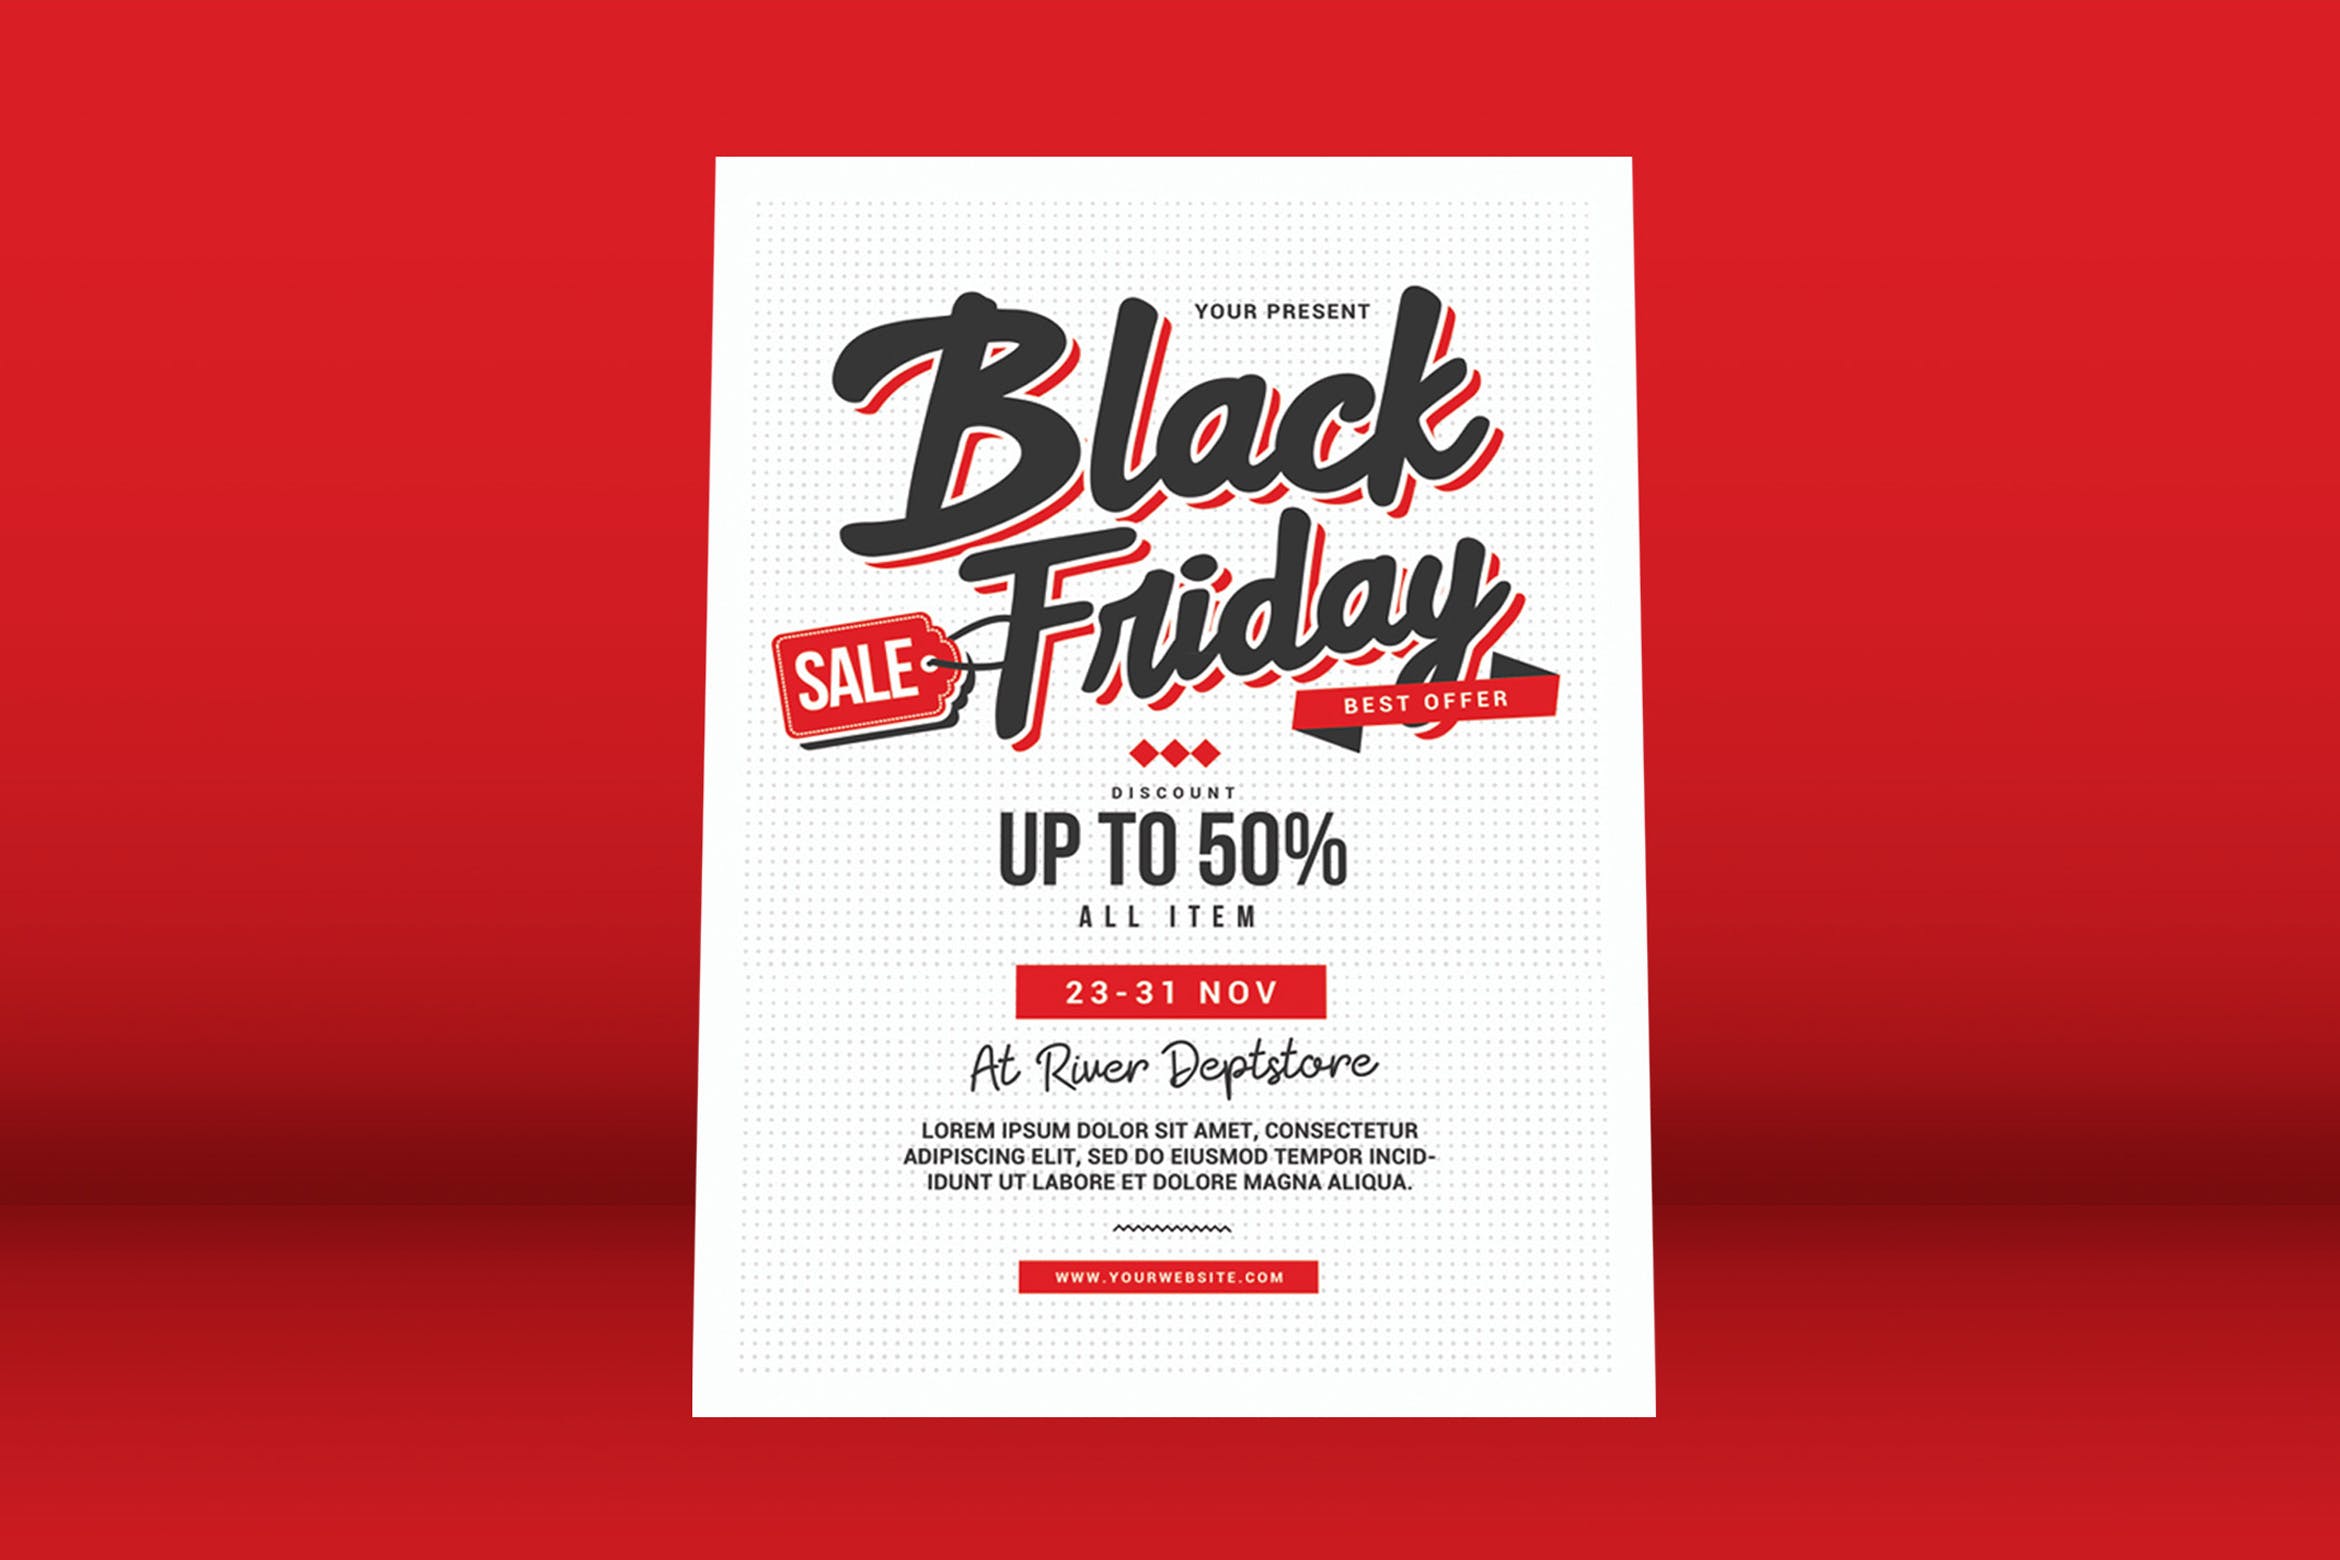 黒五全场促销优惠广告海报传单模板 black friday sale flyer